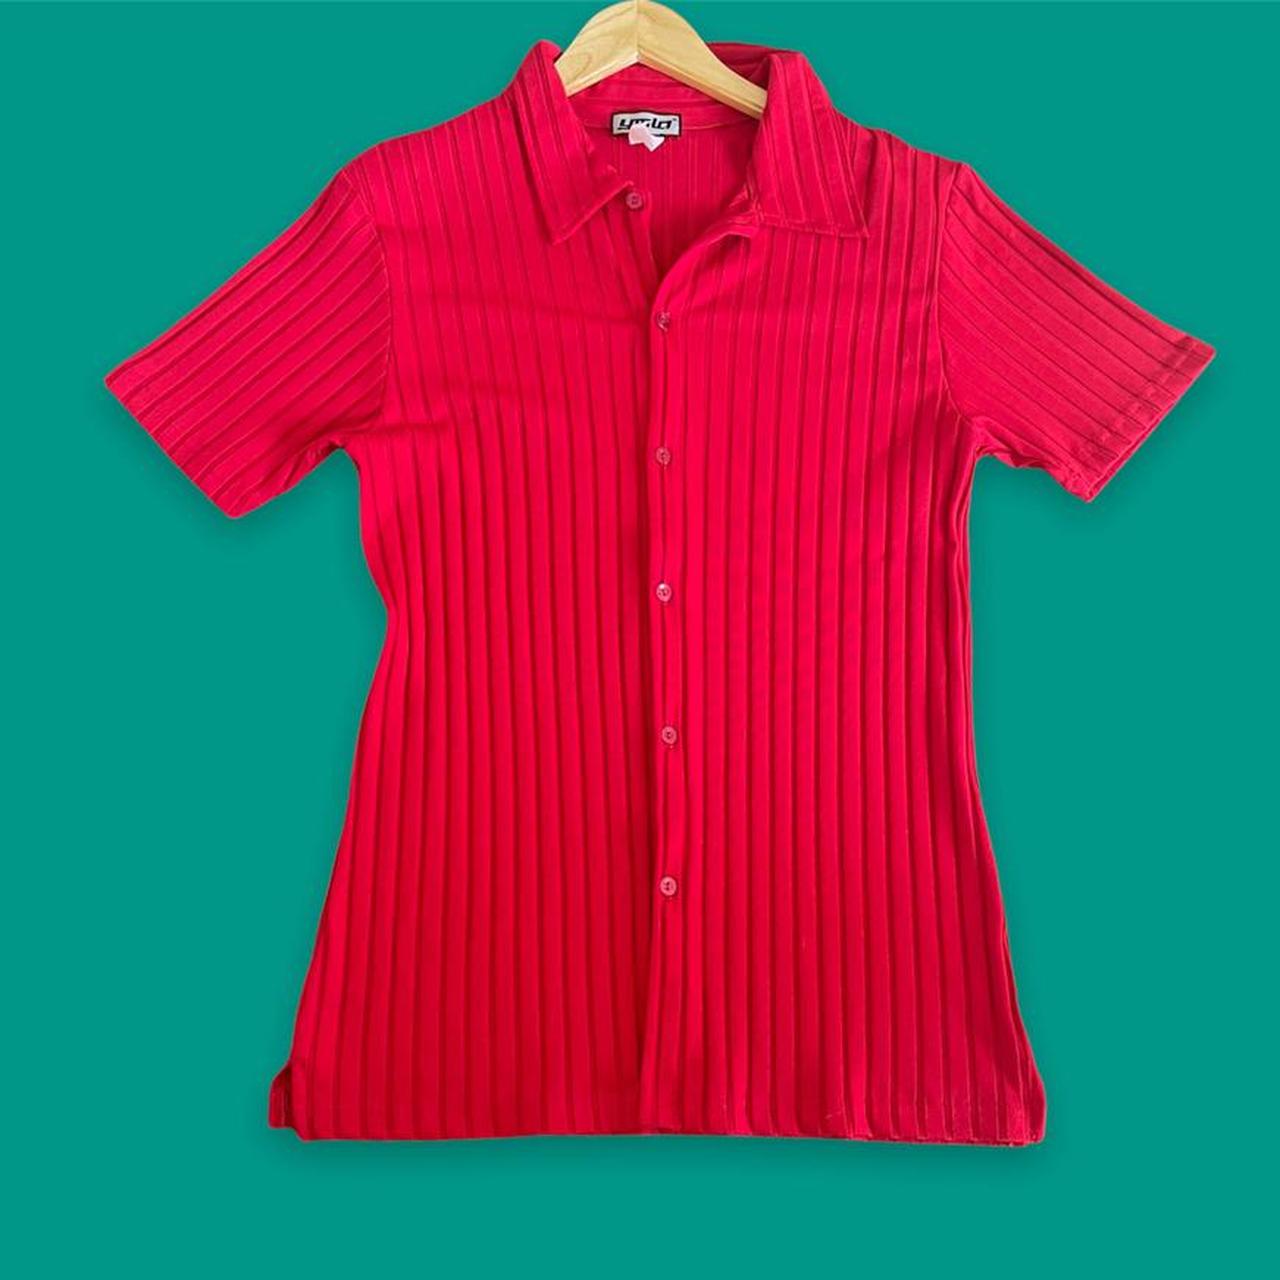 ASOS Men's Red Polo-shirts